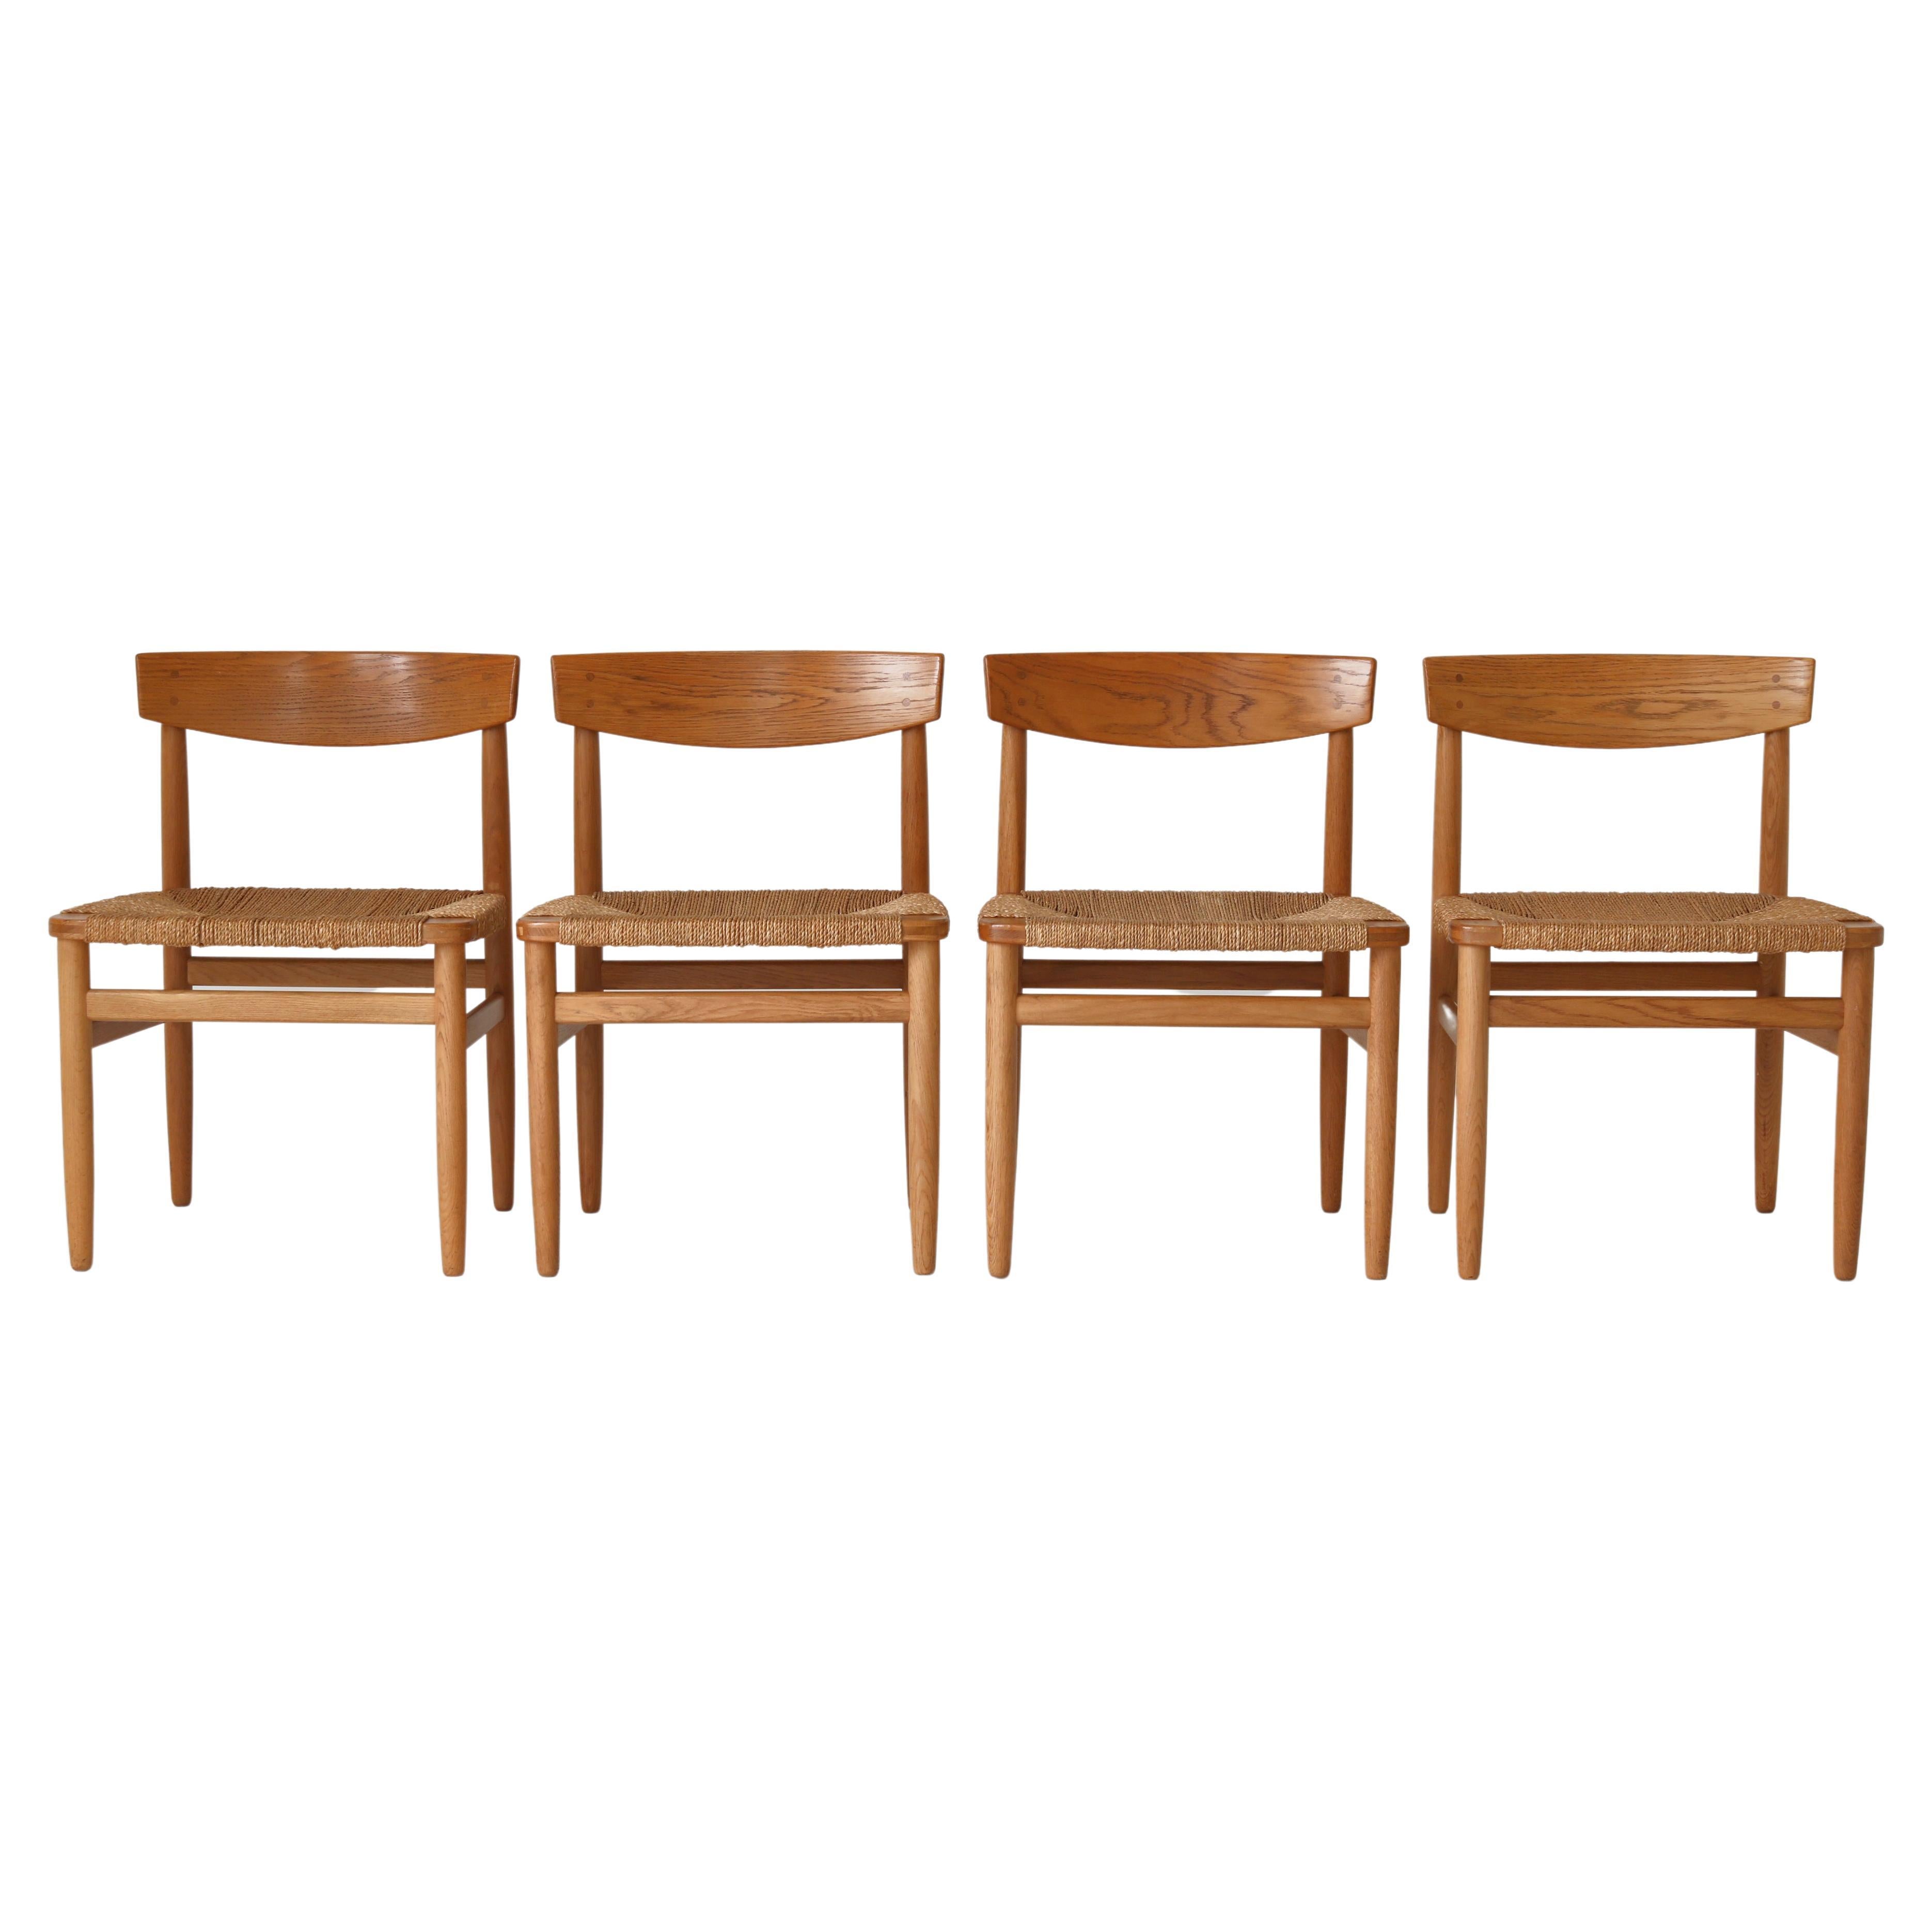 Børge Mogensen Dining Chair "Model Øresund 537" Solid Patinated Oak & Seagrass